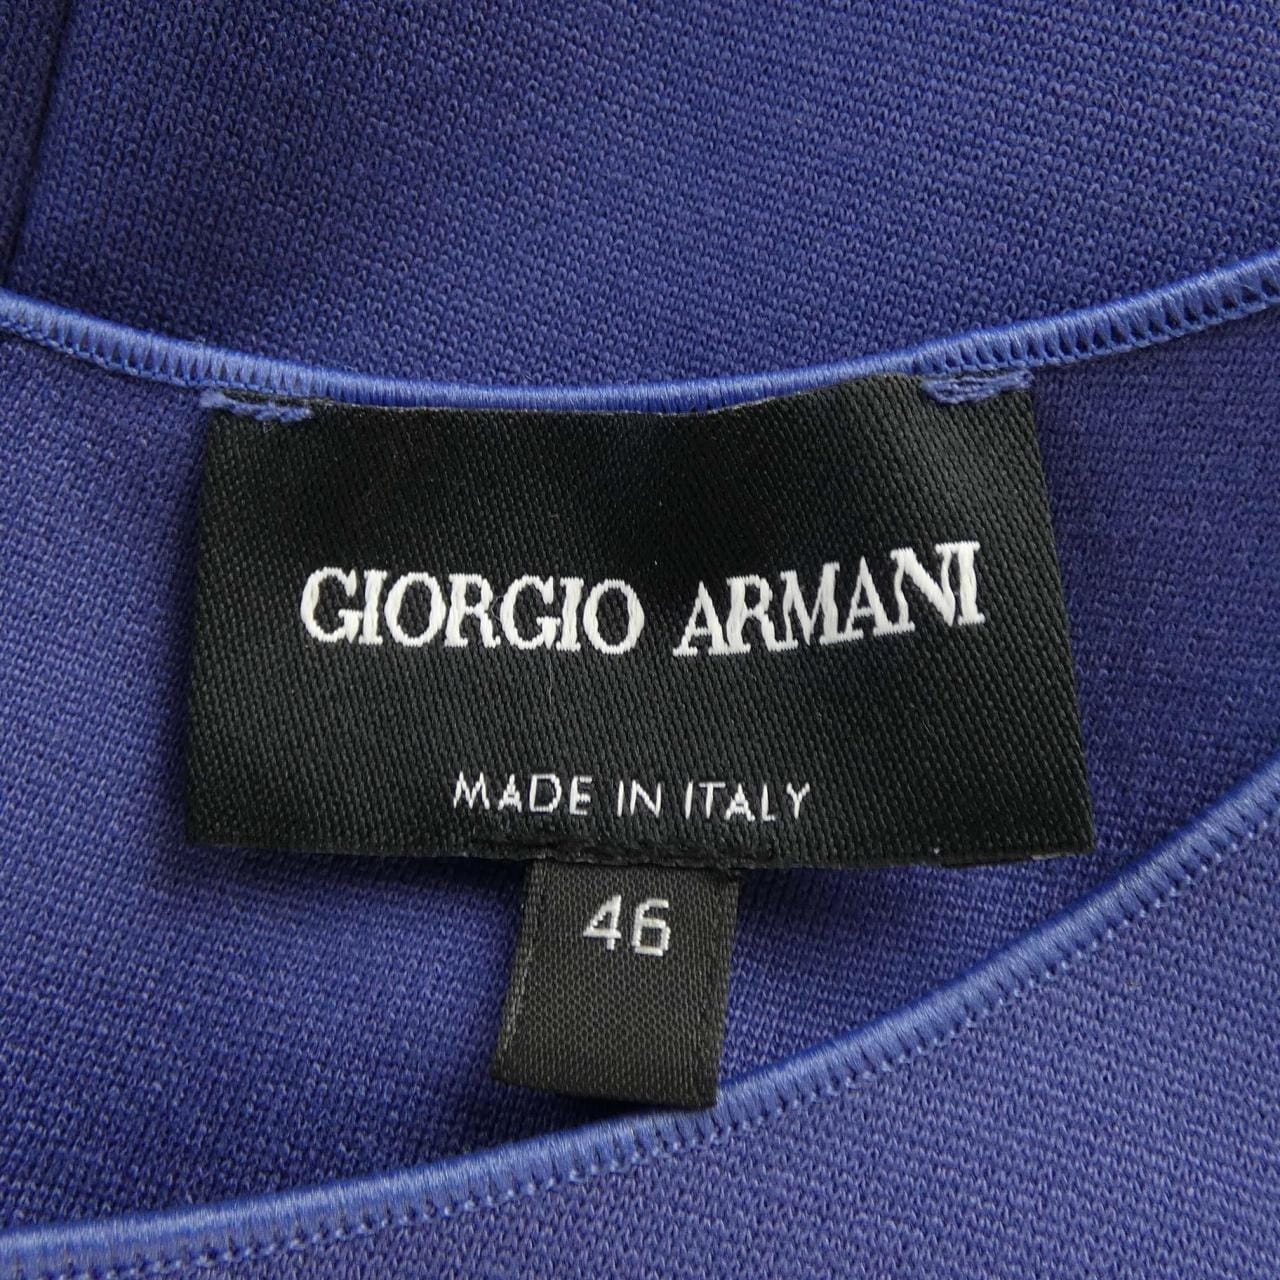 Giorgio Armani GIORGIO ARMANI Dress